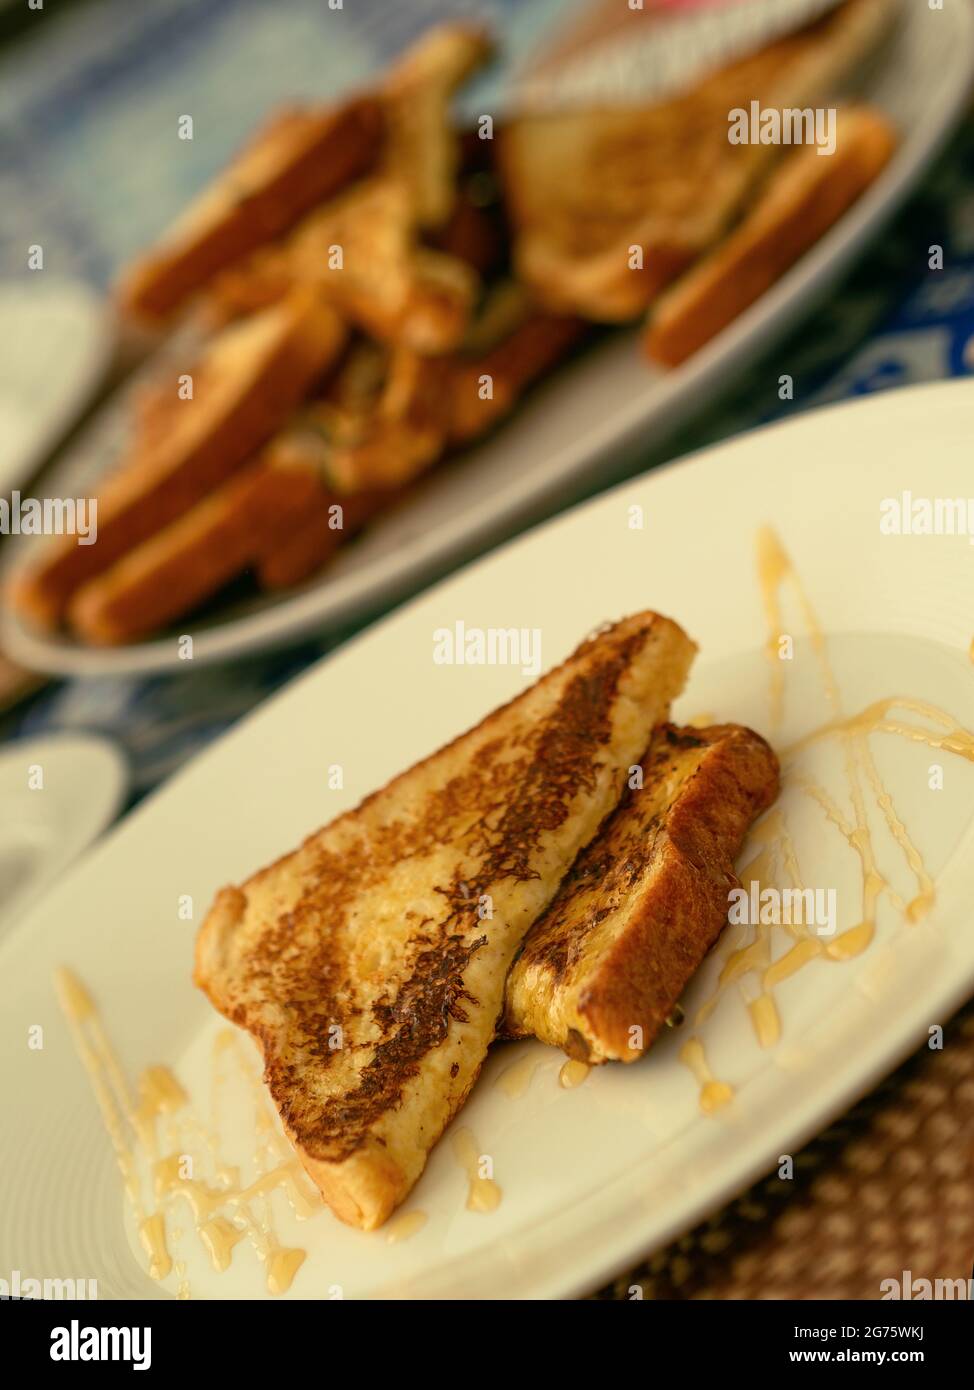 Zwei französische Toasts, serviert mit Honig auf einem weißen Teller für ein Frühstück oder Brunch, im Hintergrund ein Stapel French Toast. Stockfoto